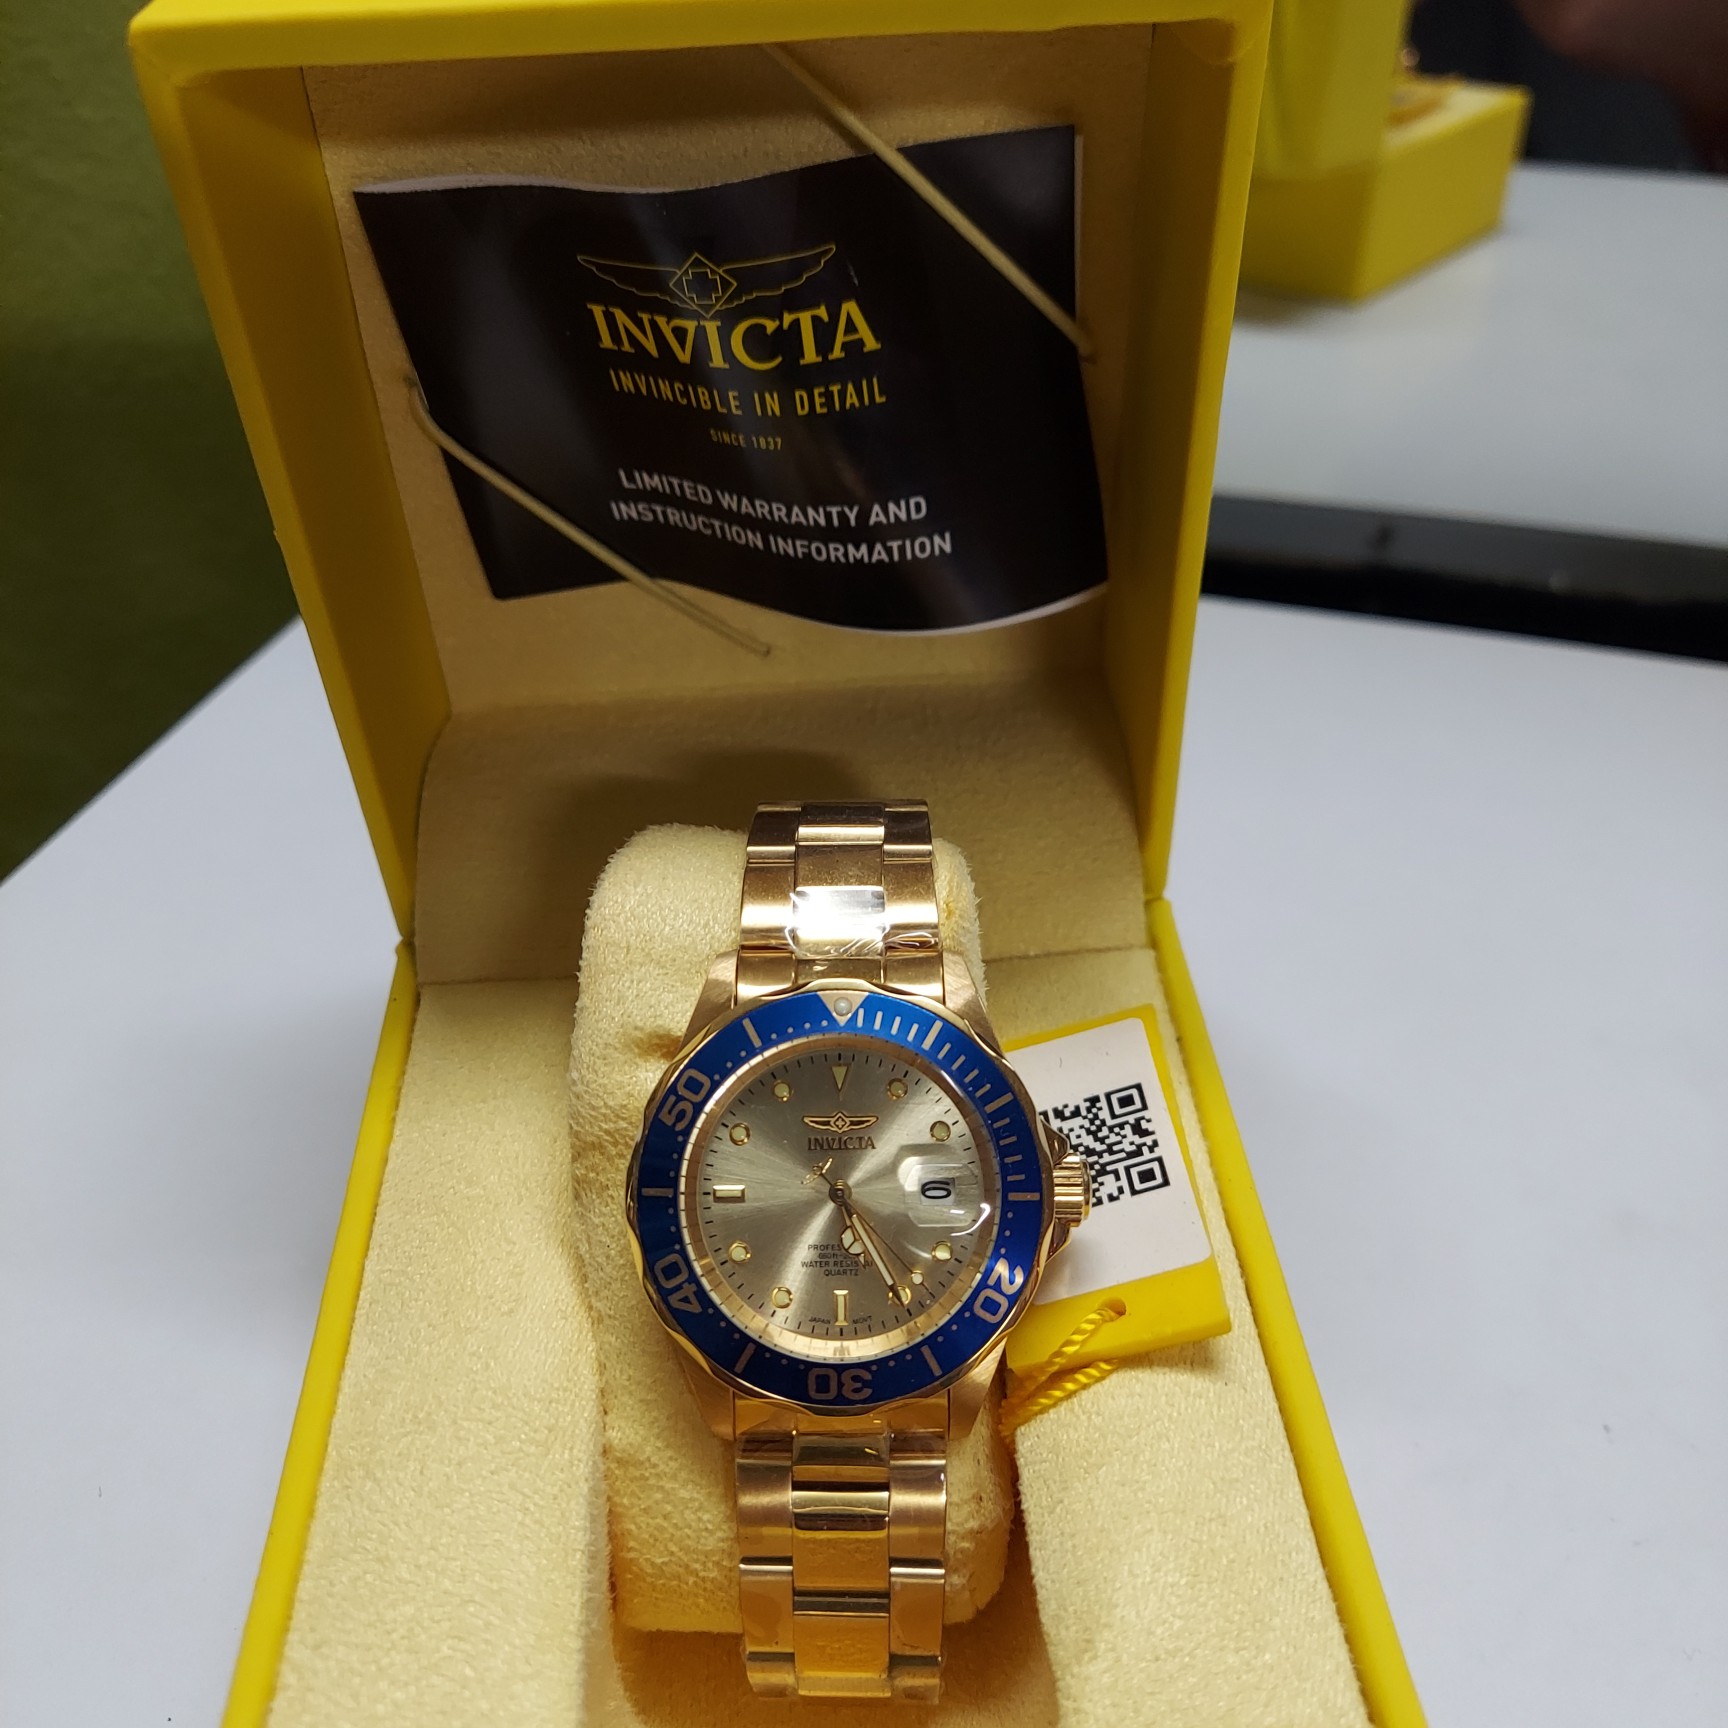 joyas, relojes y accesorios - Reloj marca invicta original disponible aquí en santiago 